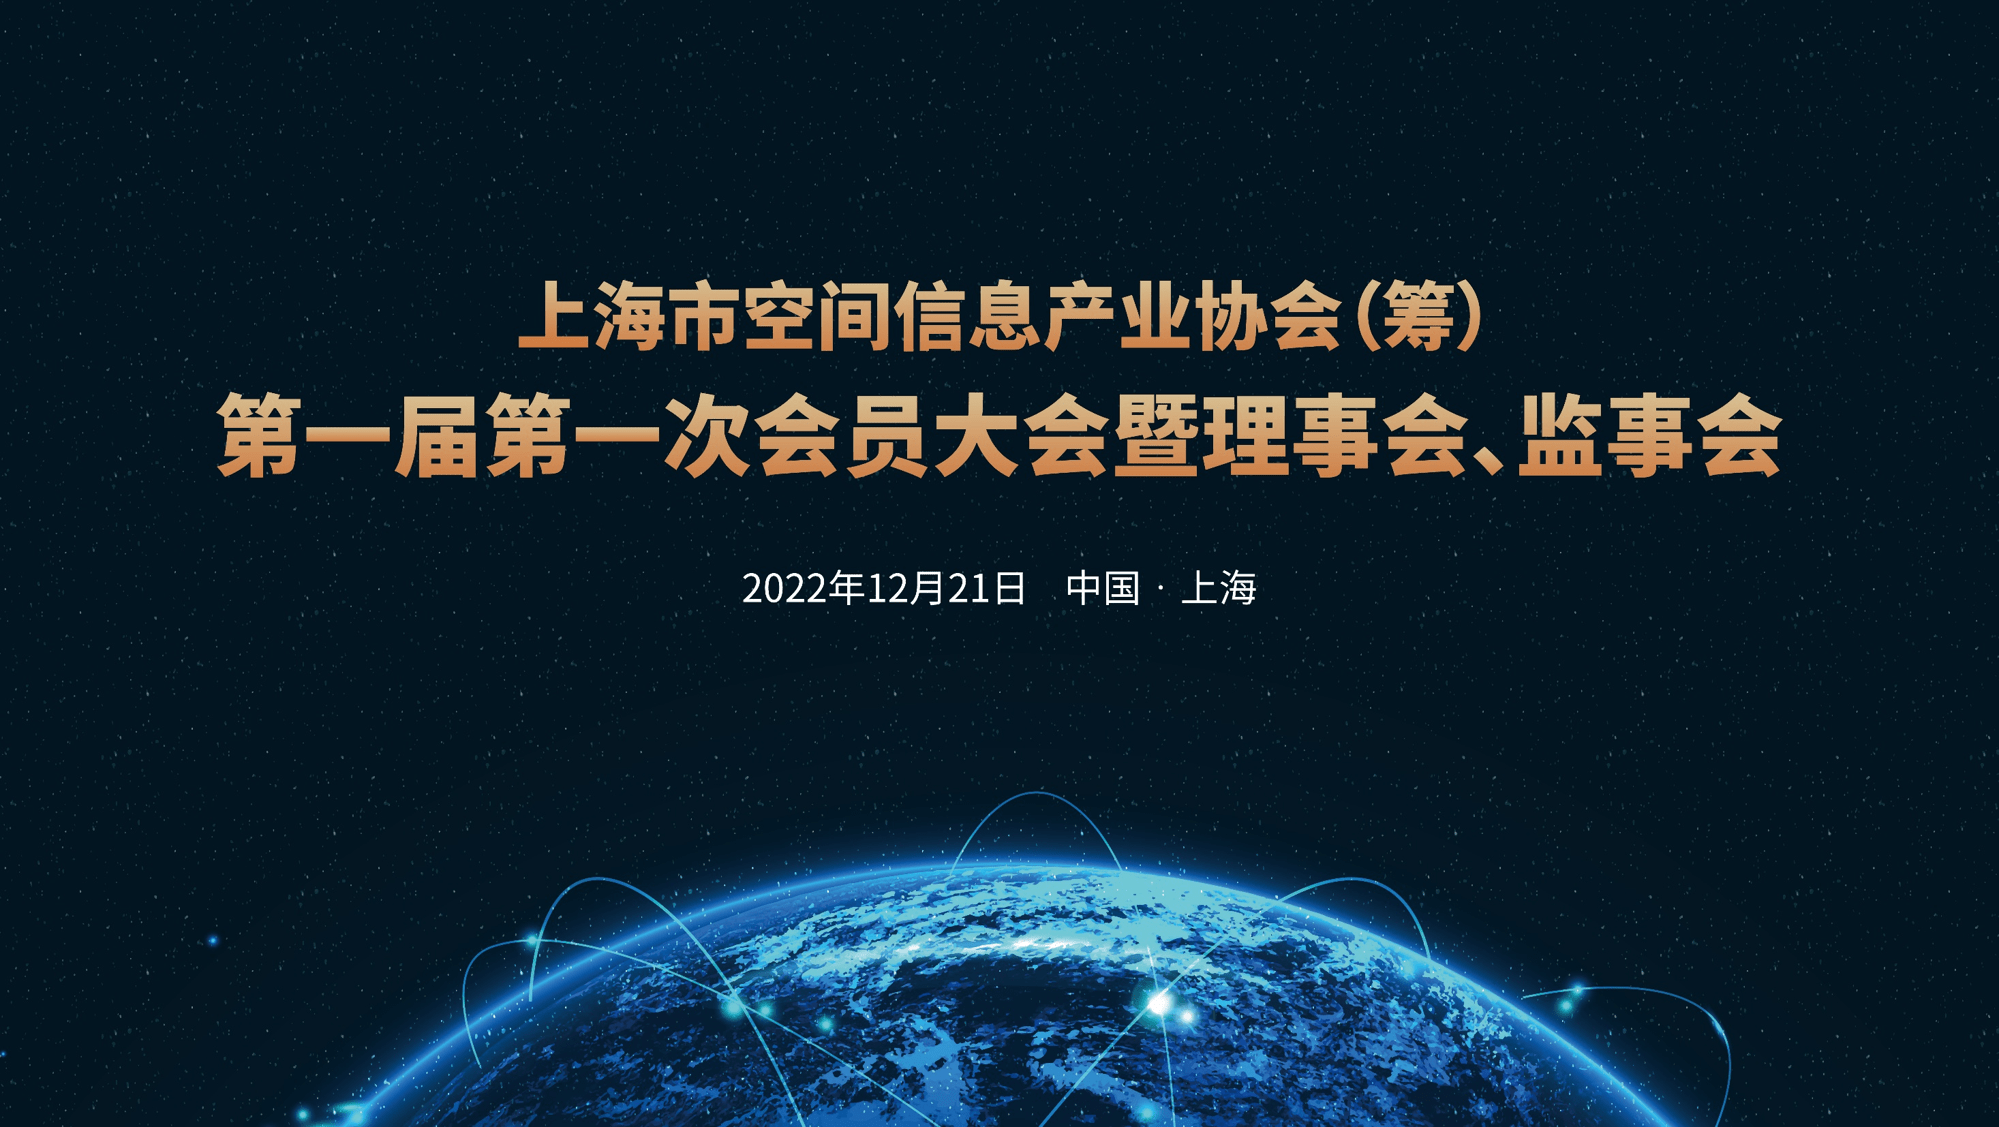 上海市空间信息产业协会（筹）召开第一届会员大会！你知道他们是干什么的吗？